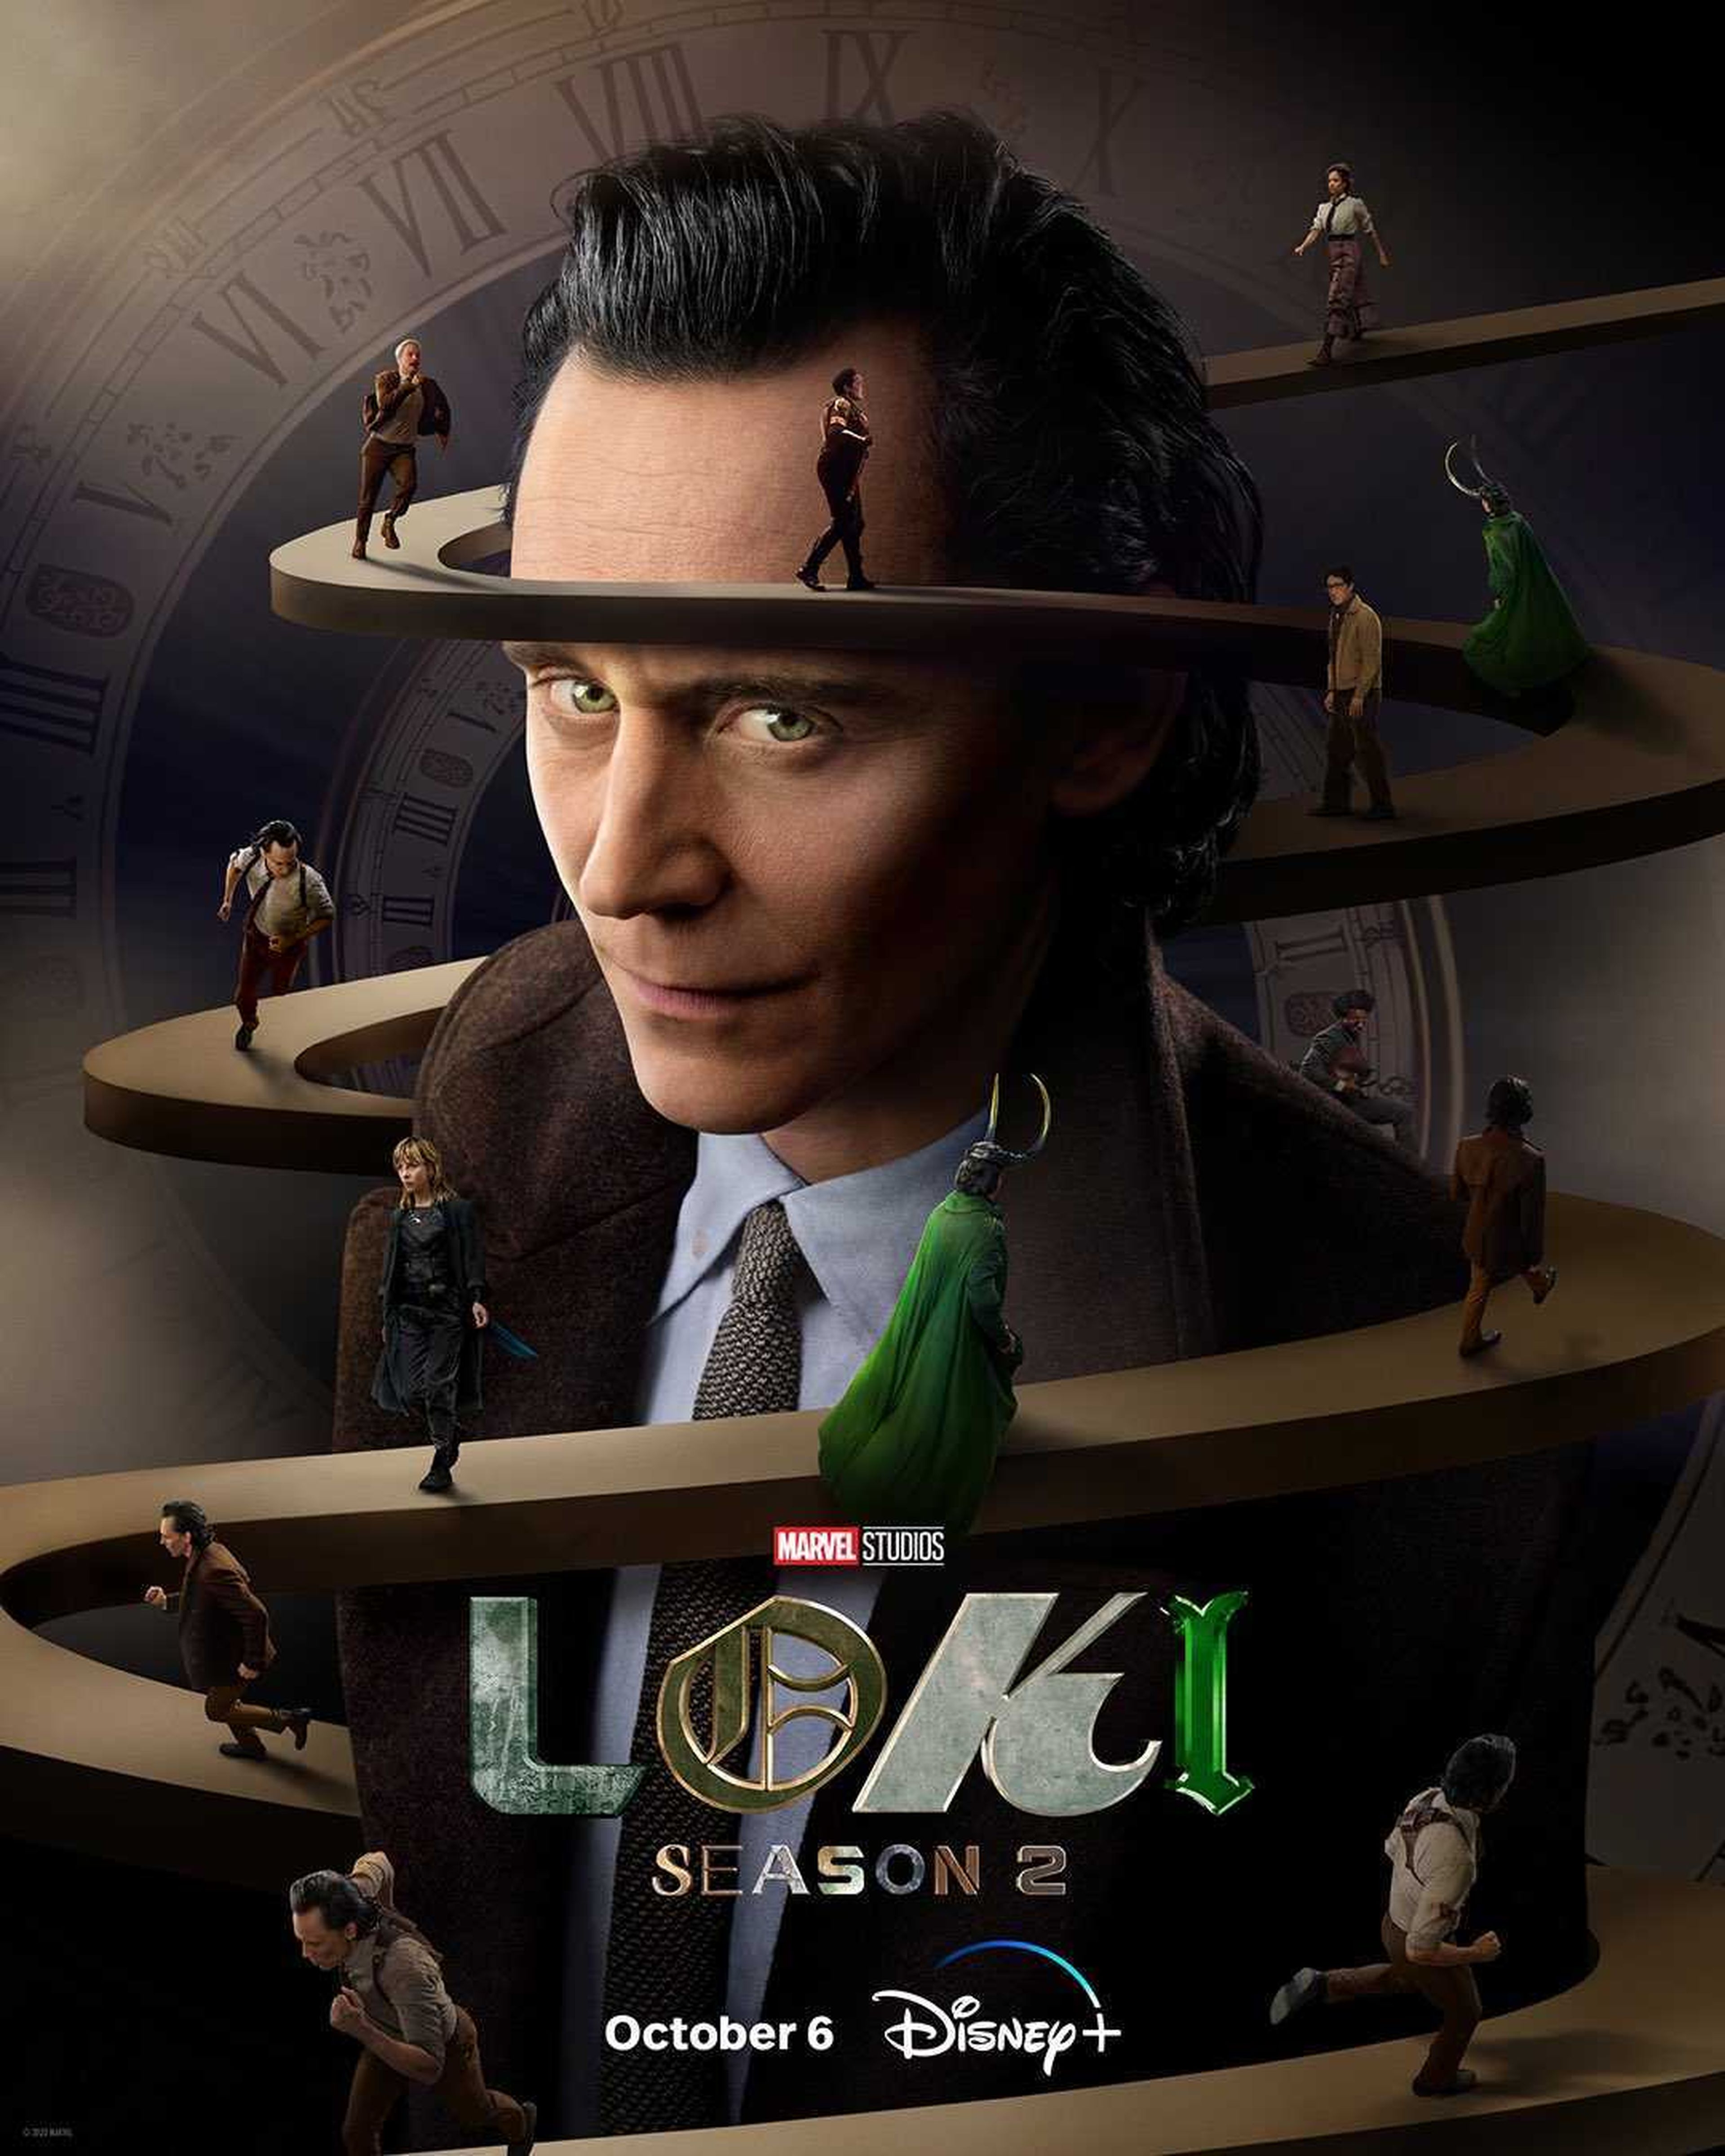 Póster de Loki  Season 2. Disney+